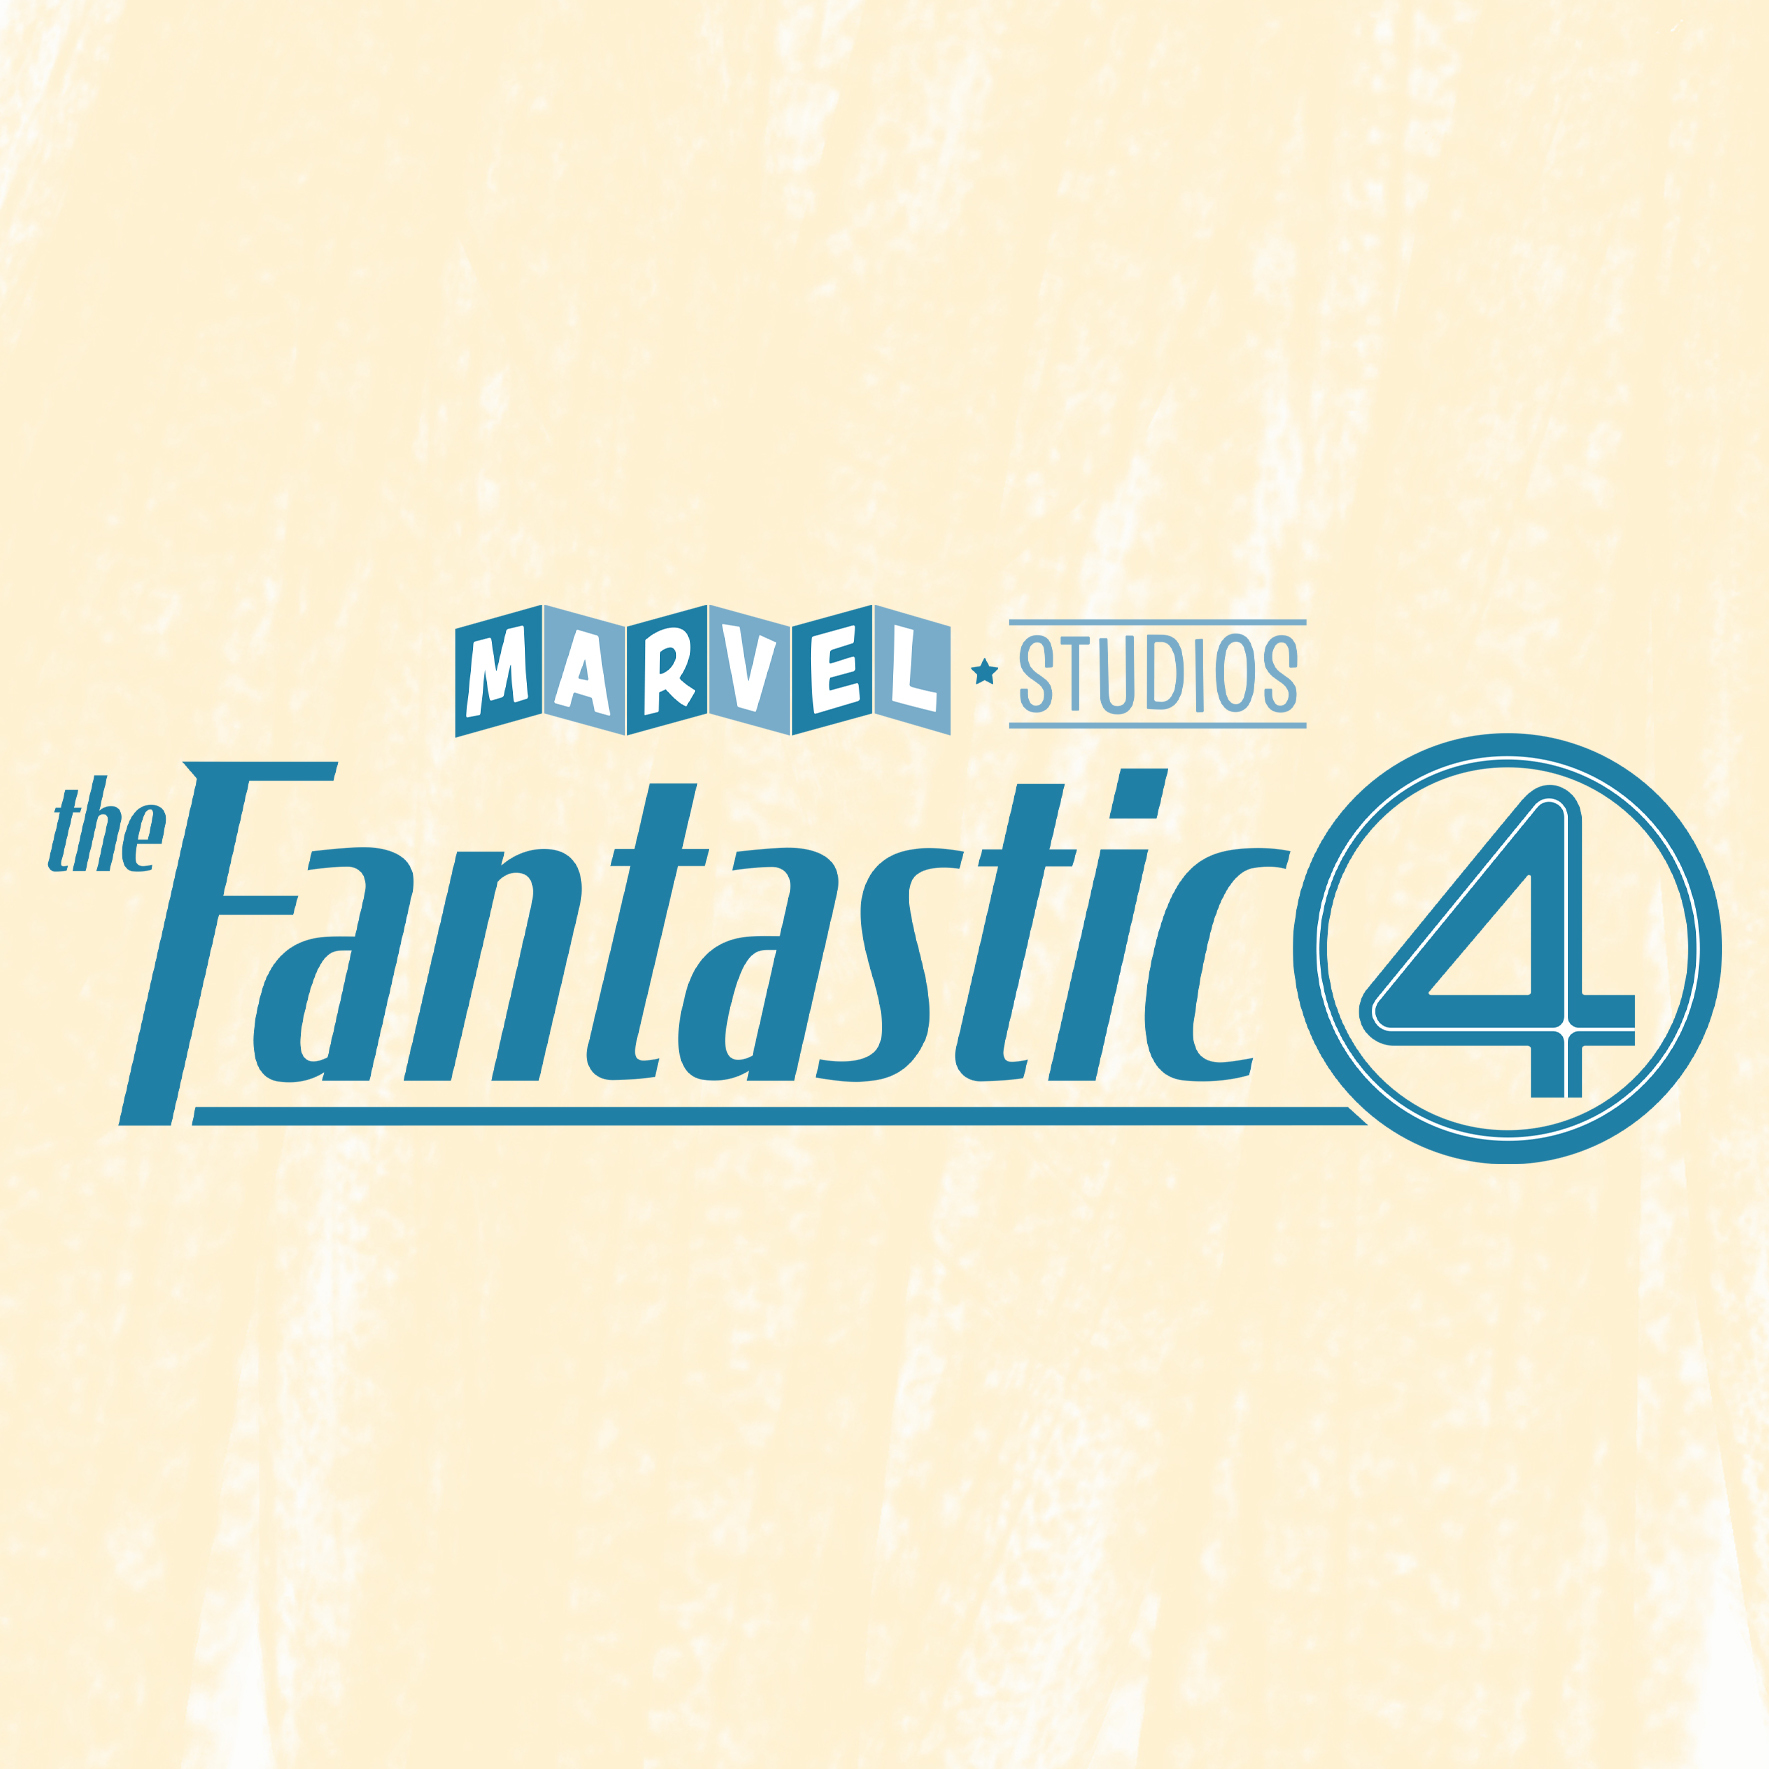 Marvel anuncia elenco para nova versão do Quarteto Fantástico!